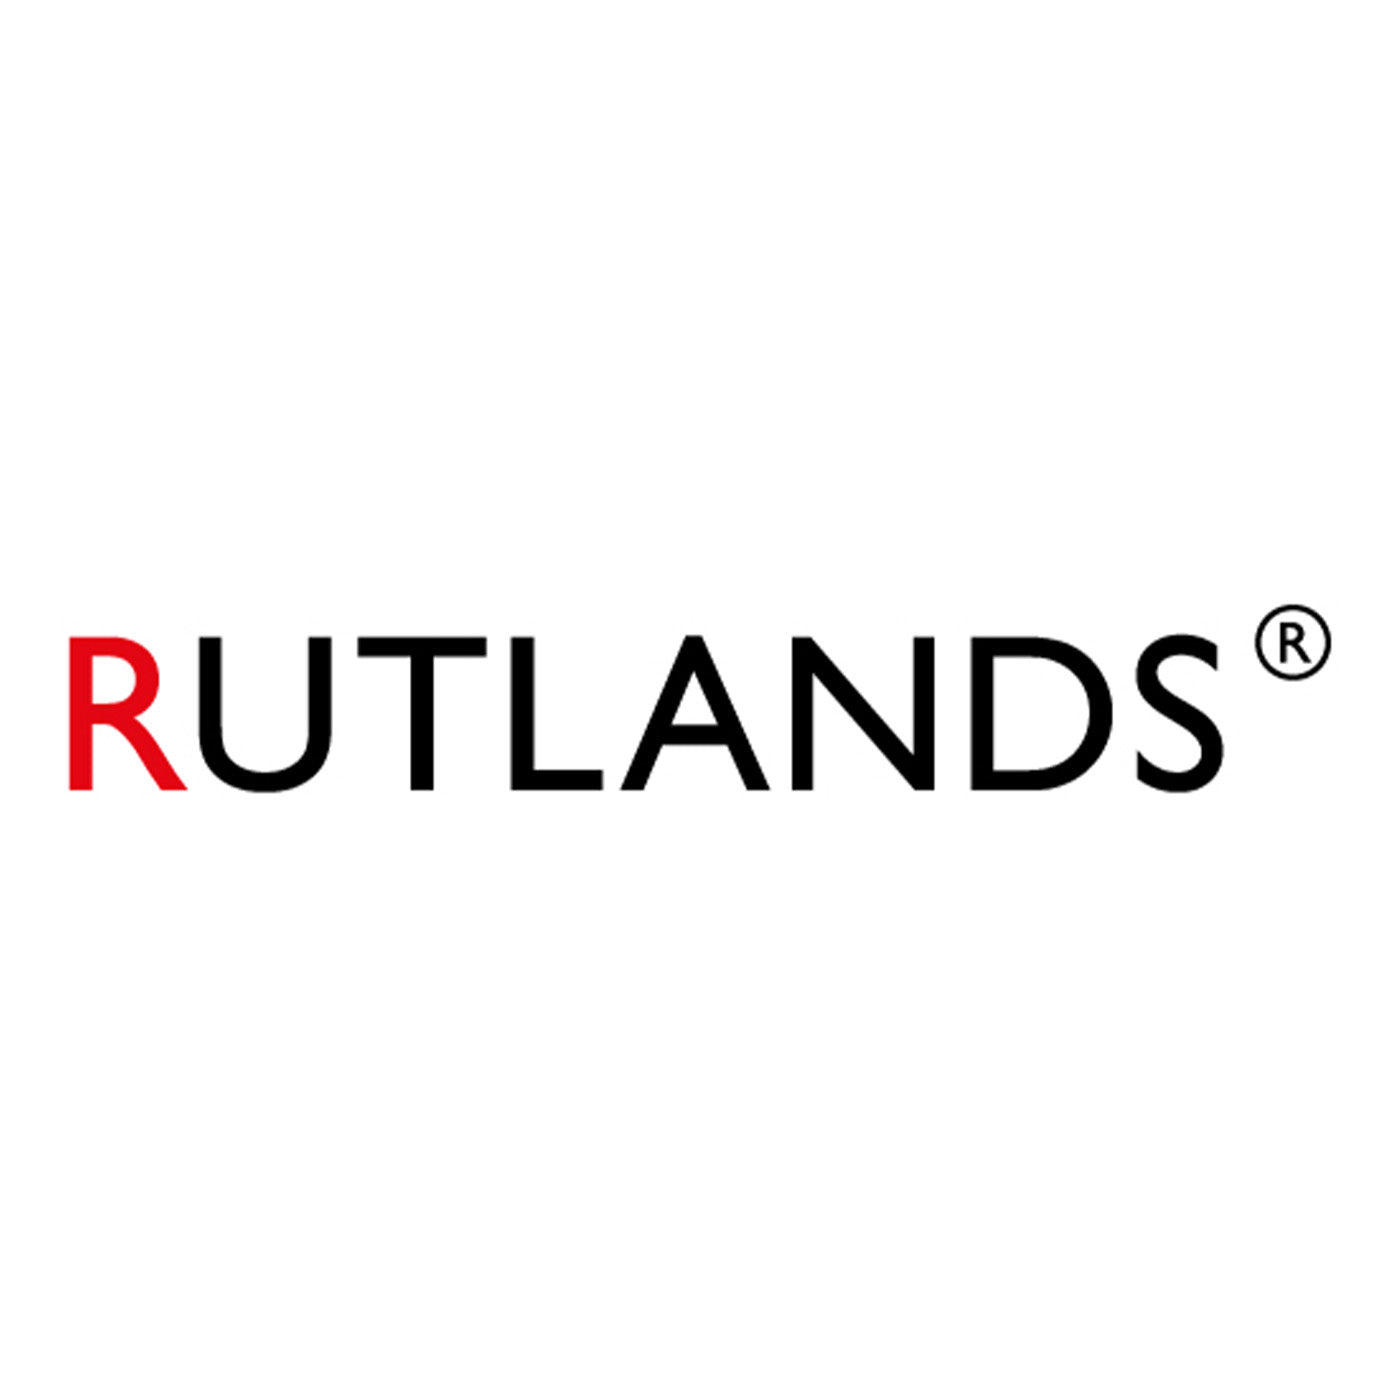 www.rutlands.com